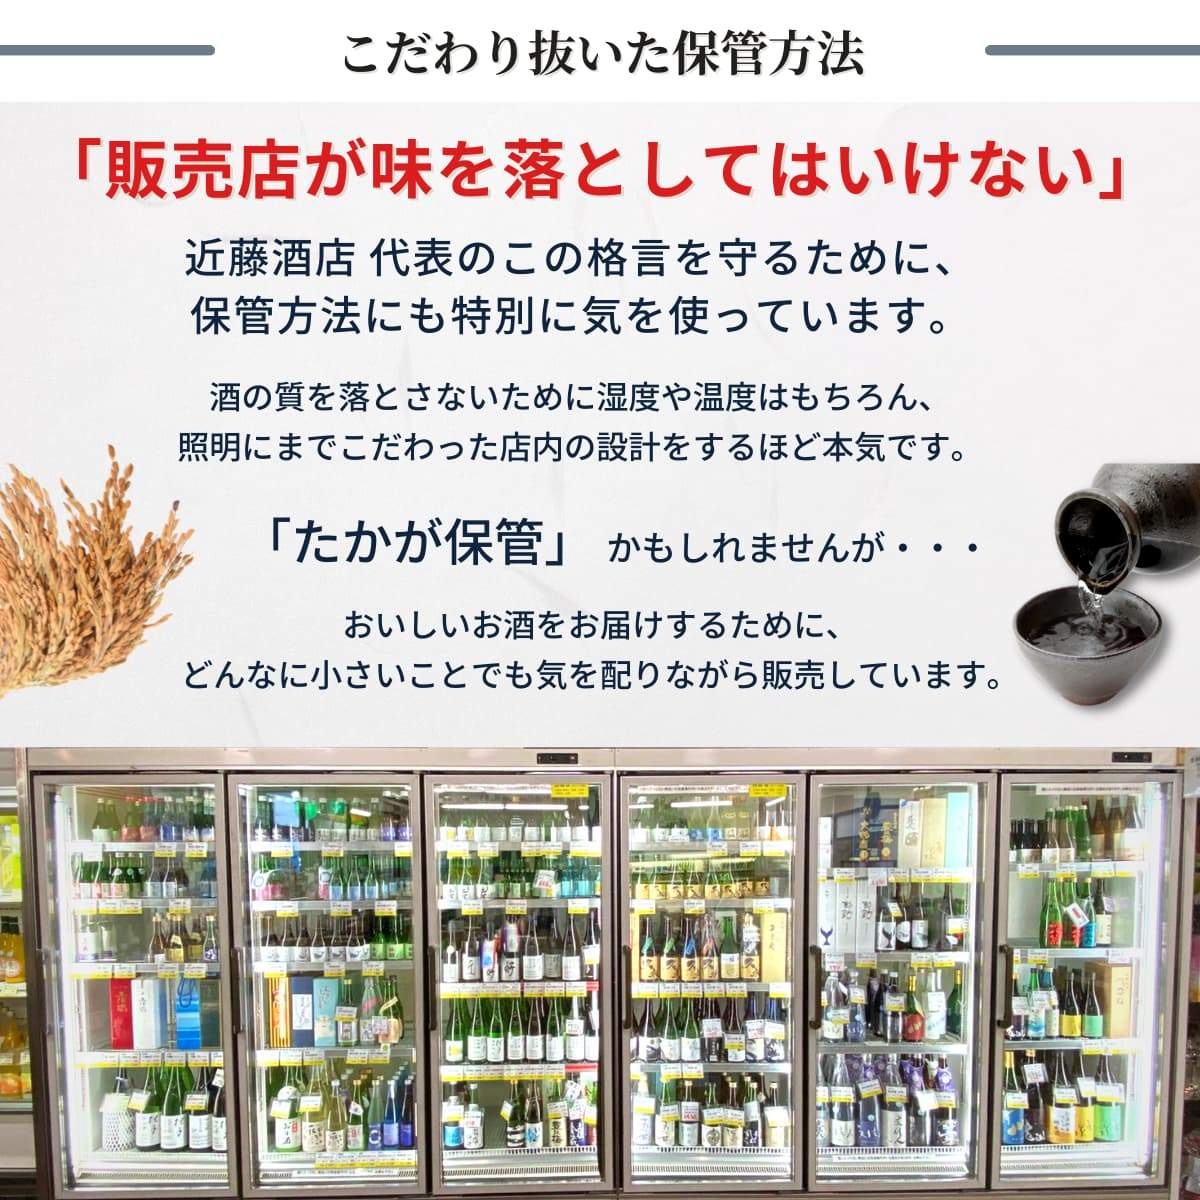 【夏のお酒】 桂月 特別純米酒60 夏の生酒 超辛口 720mL